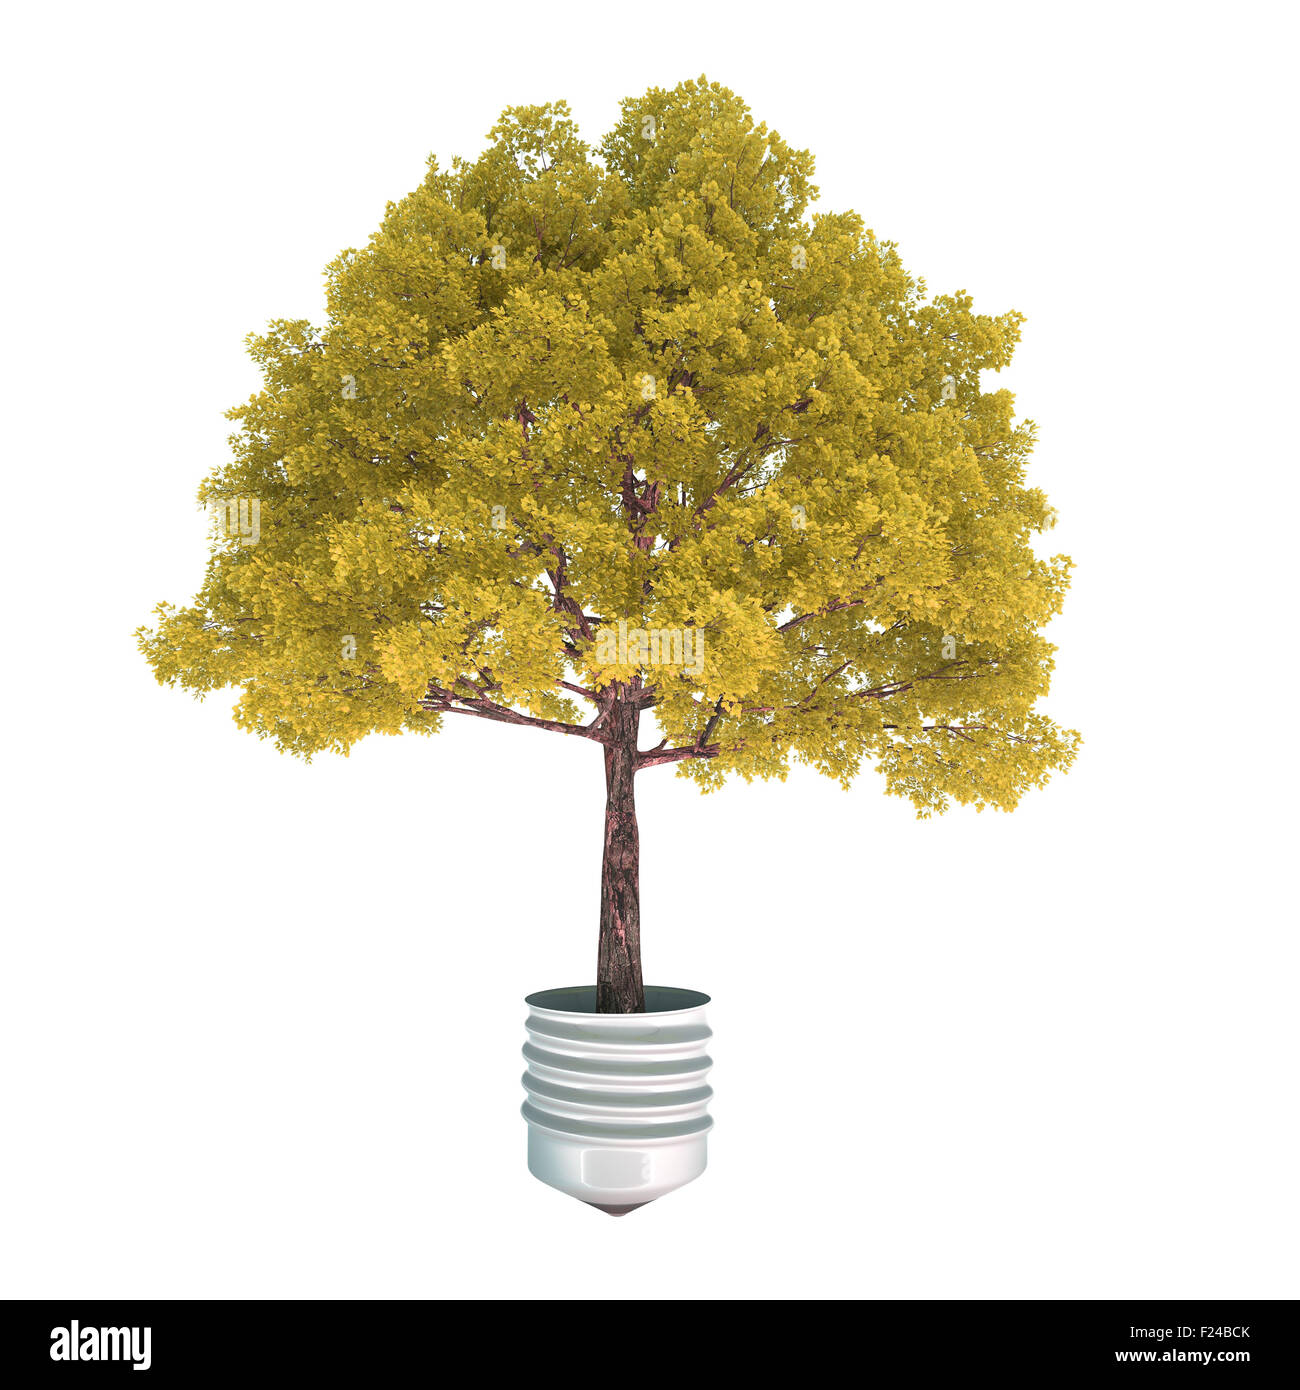 Herbst Baum wächst aus einem Metall Lampe Basis Stockfoto